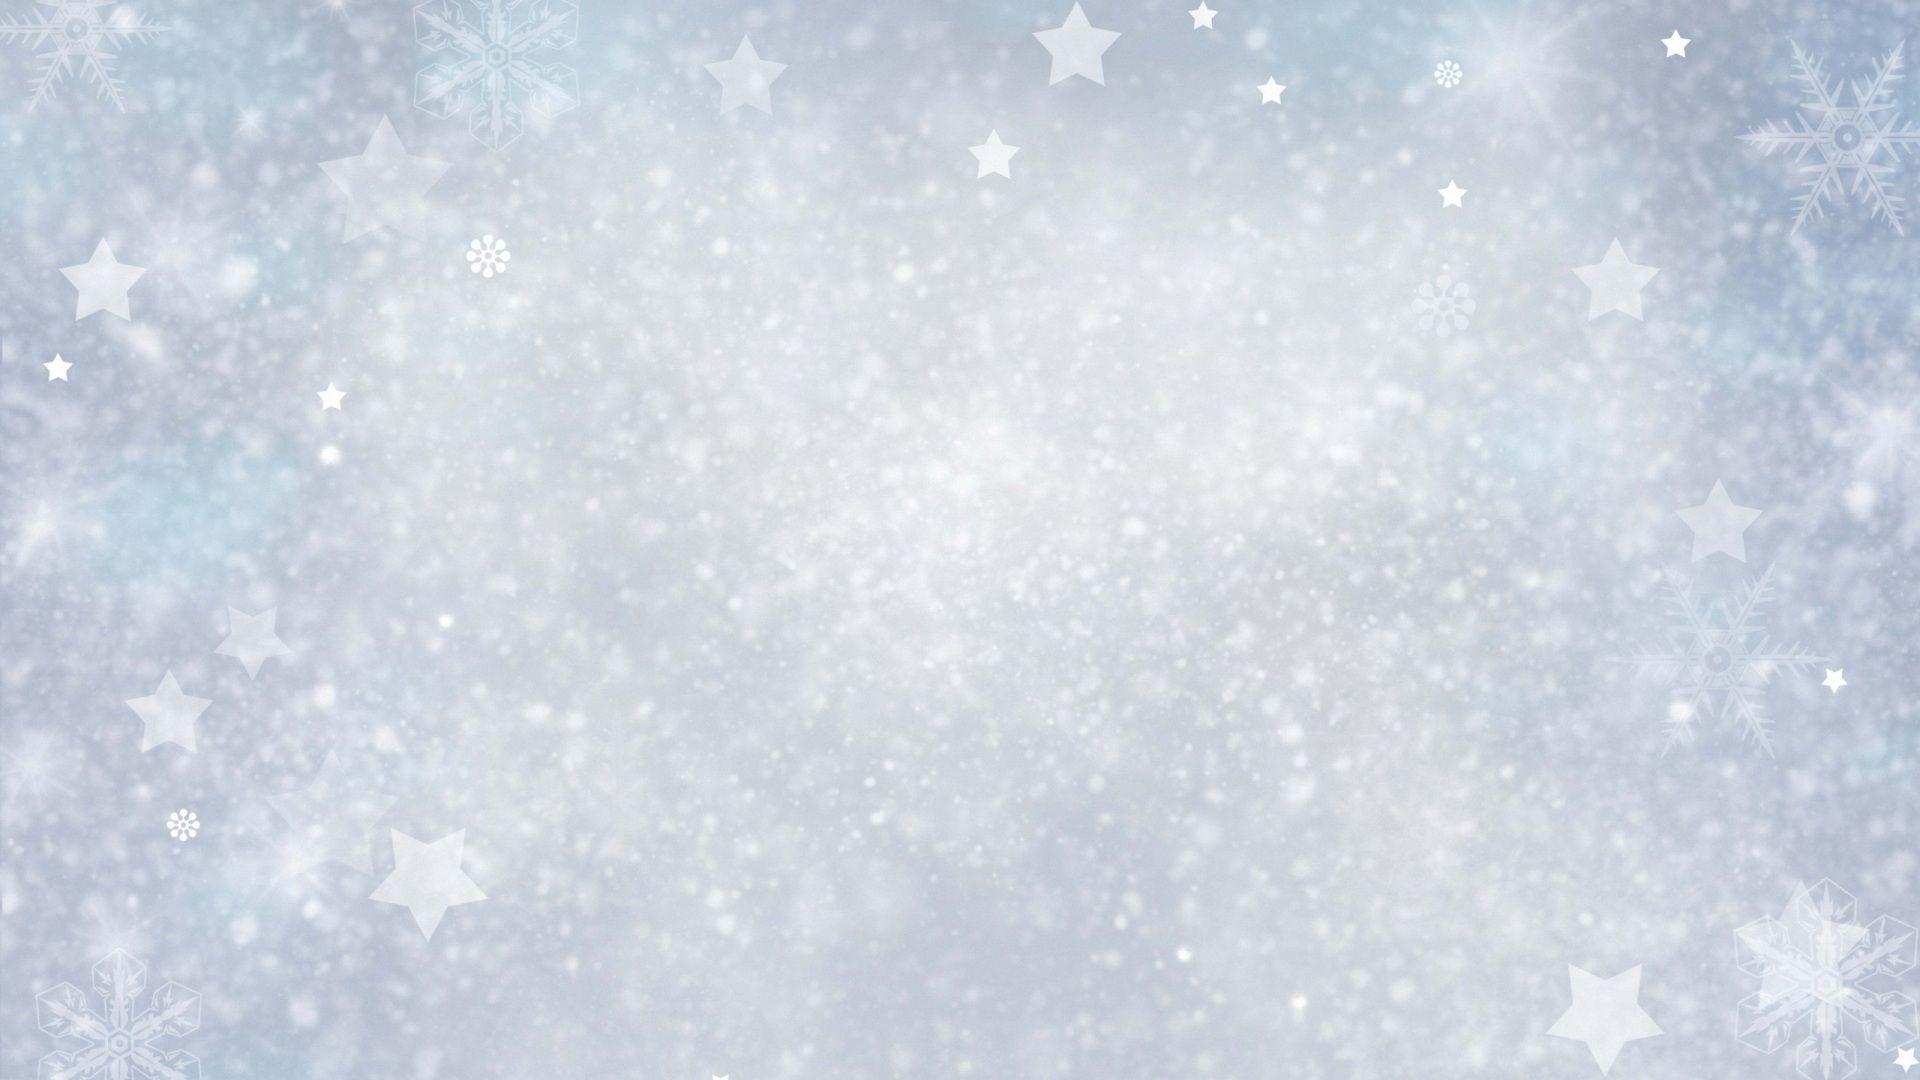 Download Snowflake Wallpaper 15529 1920x1080 px